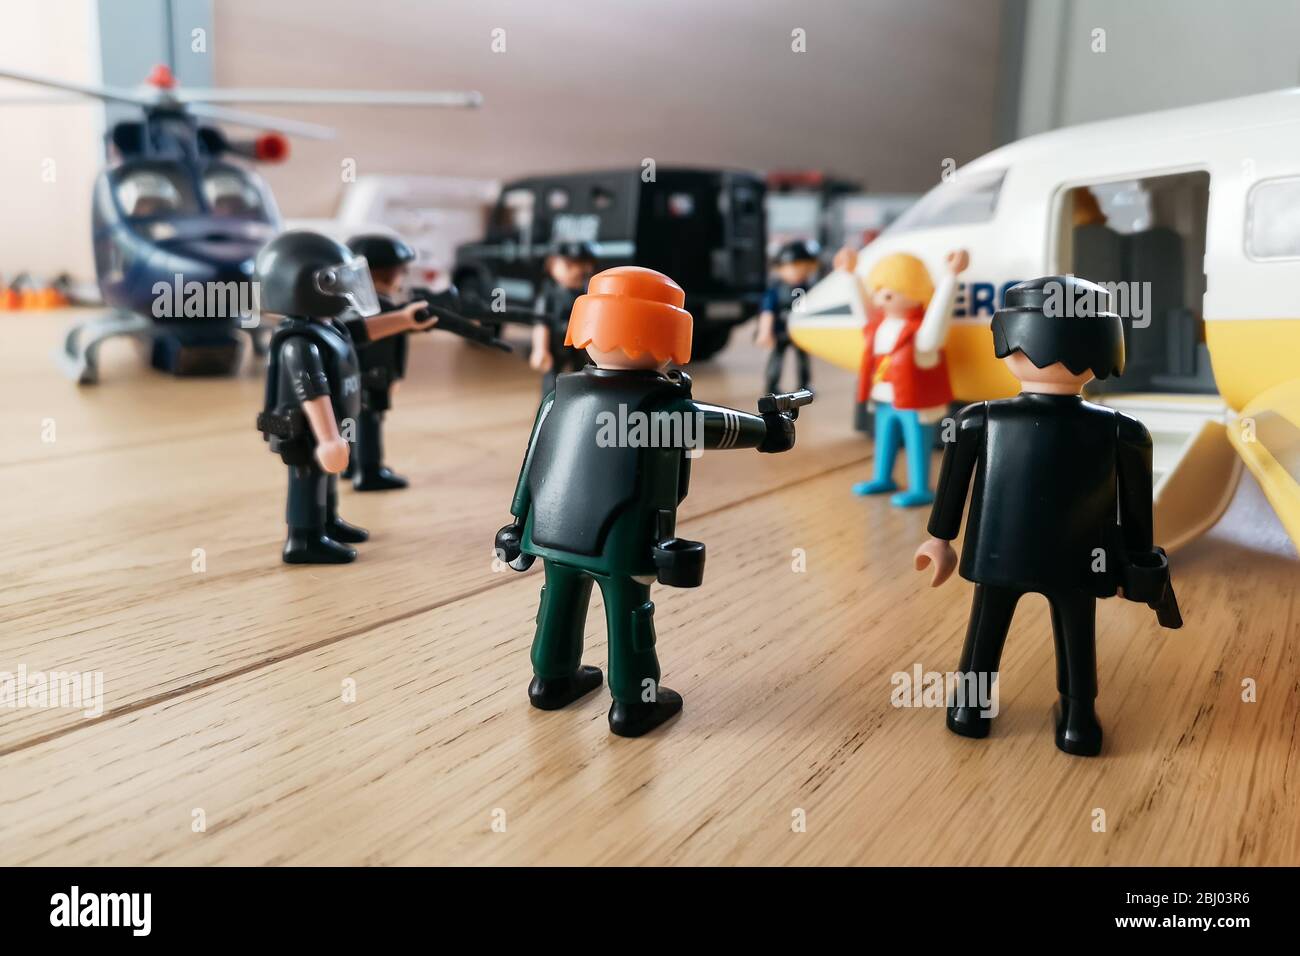 Madrid, Spanien - 13. Juli 2019: Playmobil Figuren in Szene, die Polizei  Kräfte um ein Flugzeug. Konzept des Terrorismus und Drogenverkehrs  Fortsetzung Stockfotografie - Alamy